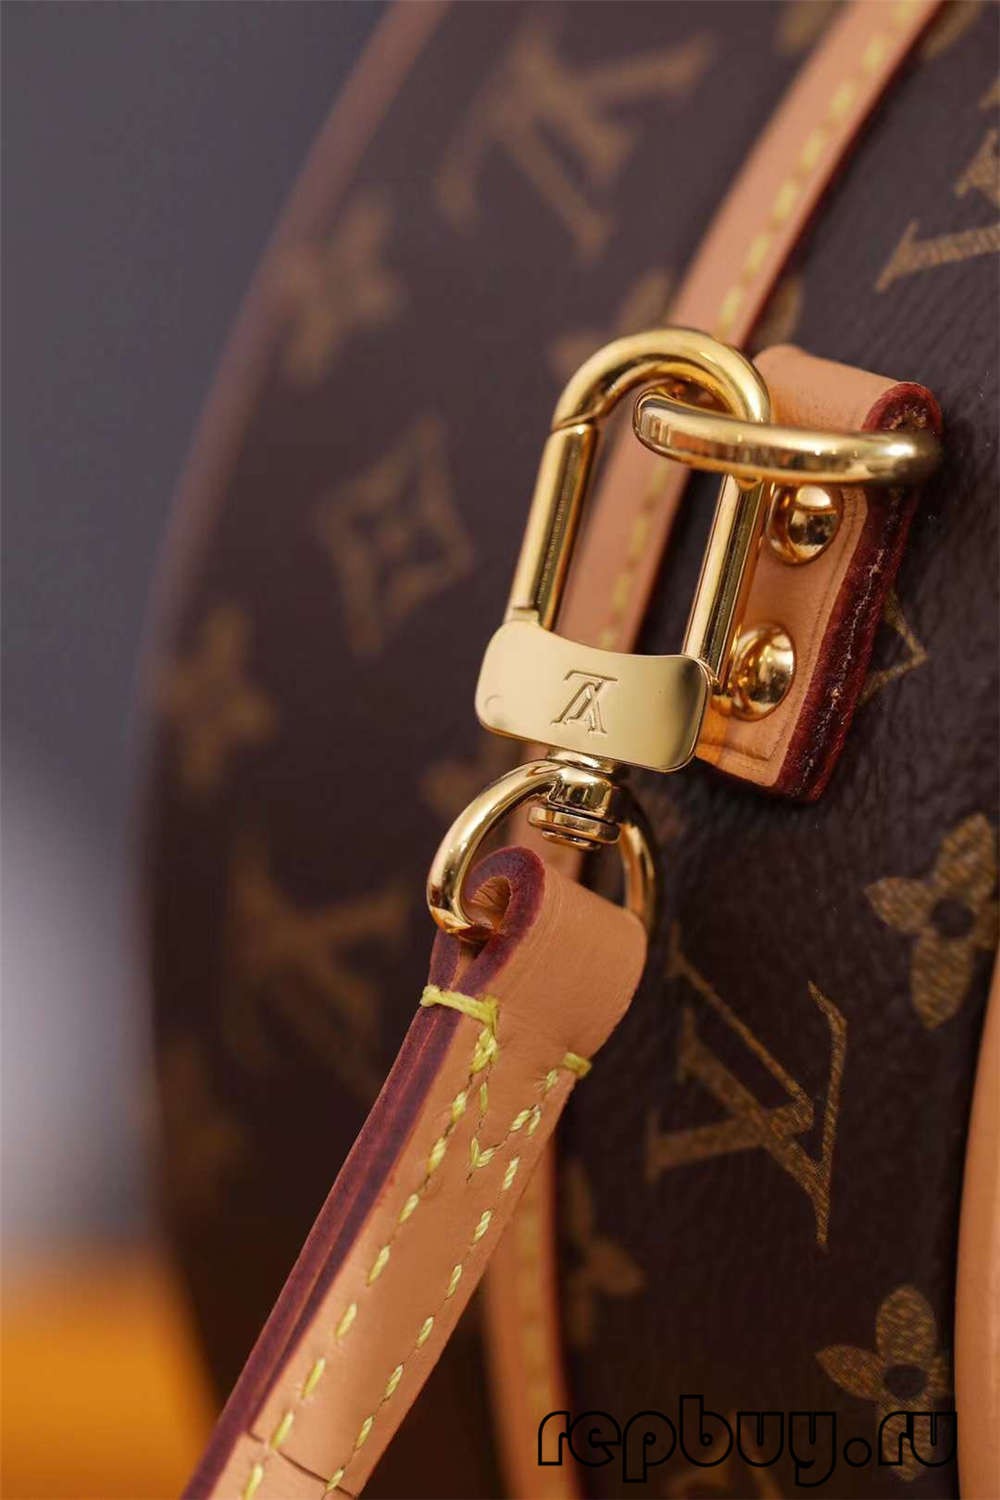 Louis Vuitton M43514 PETITE BOITE CHAPEAU 17.5 cm-ko goiko erreplikako poltsak Hardwarea eta artisautza xehetasunak (2022ko edizioa)-Best Quality Fake Louis Vuitton Bag Online Store, Replica designer bag ru